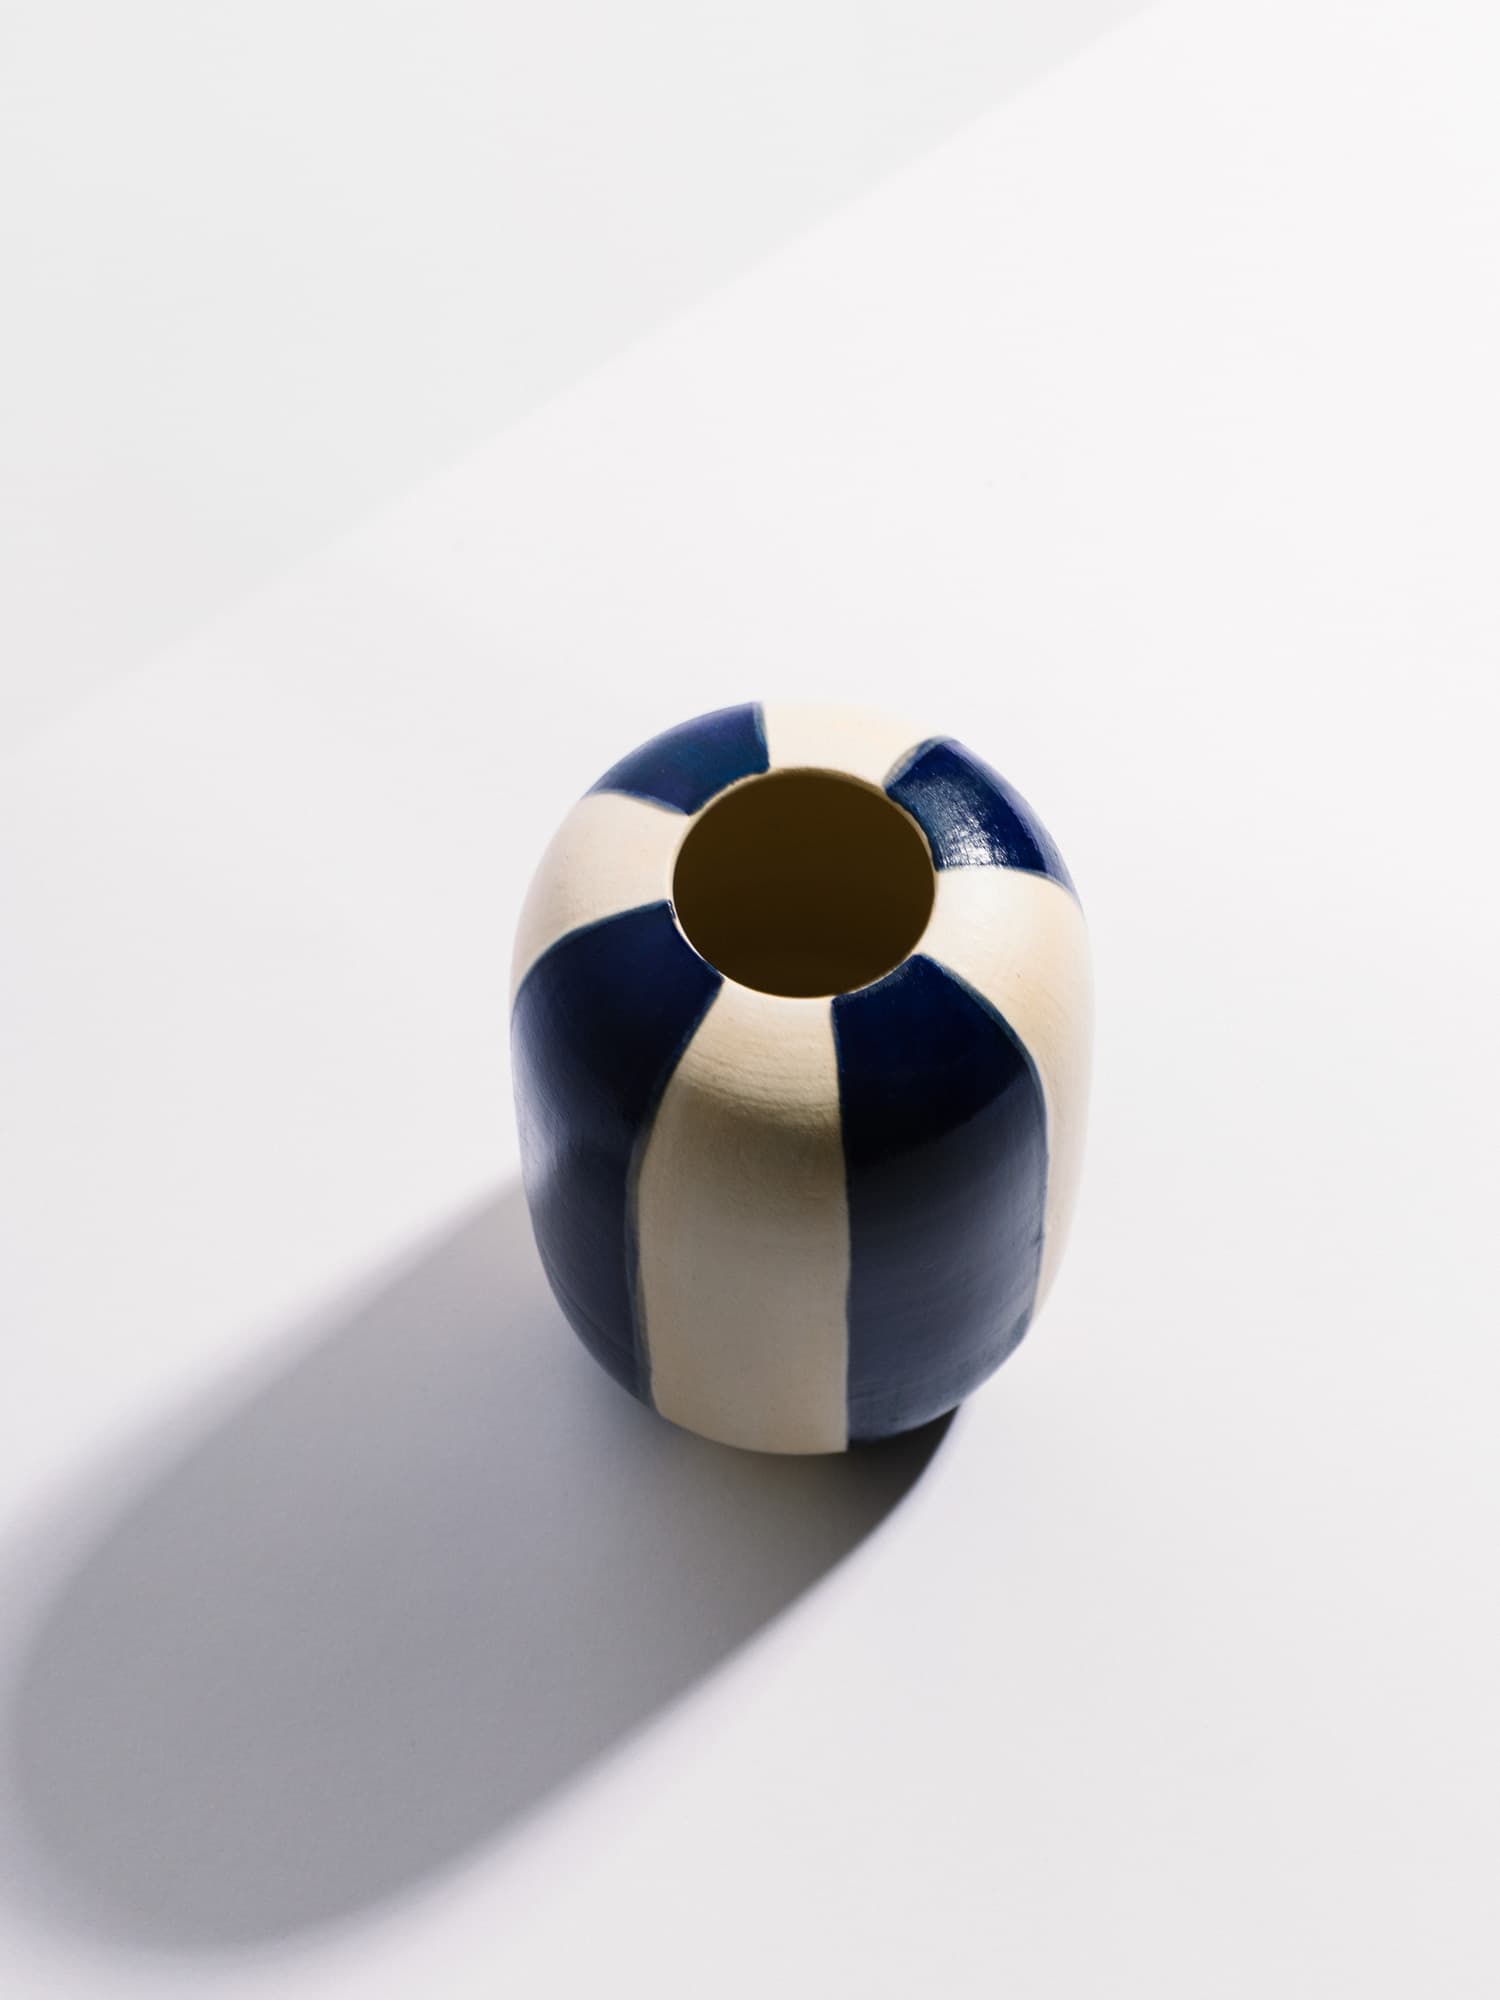 Blue Striped Vase